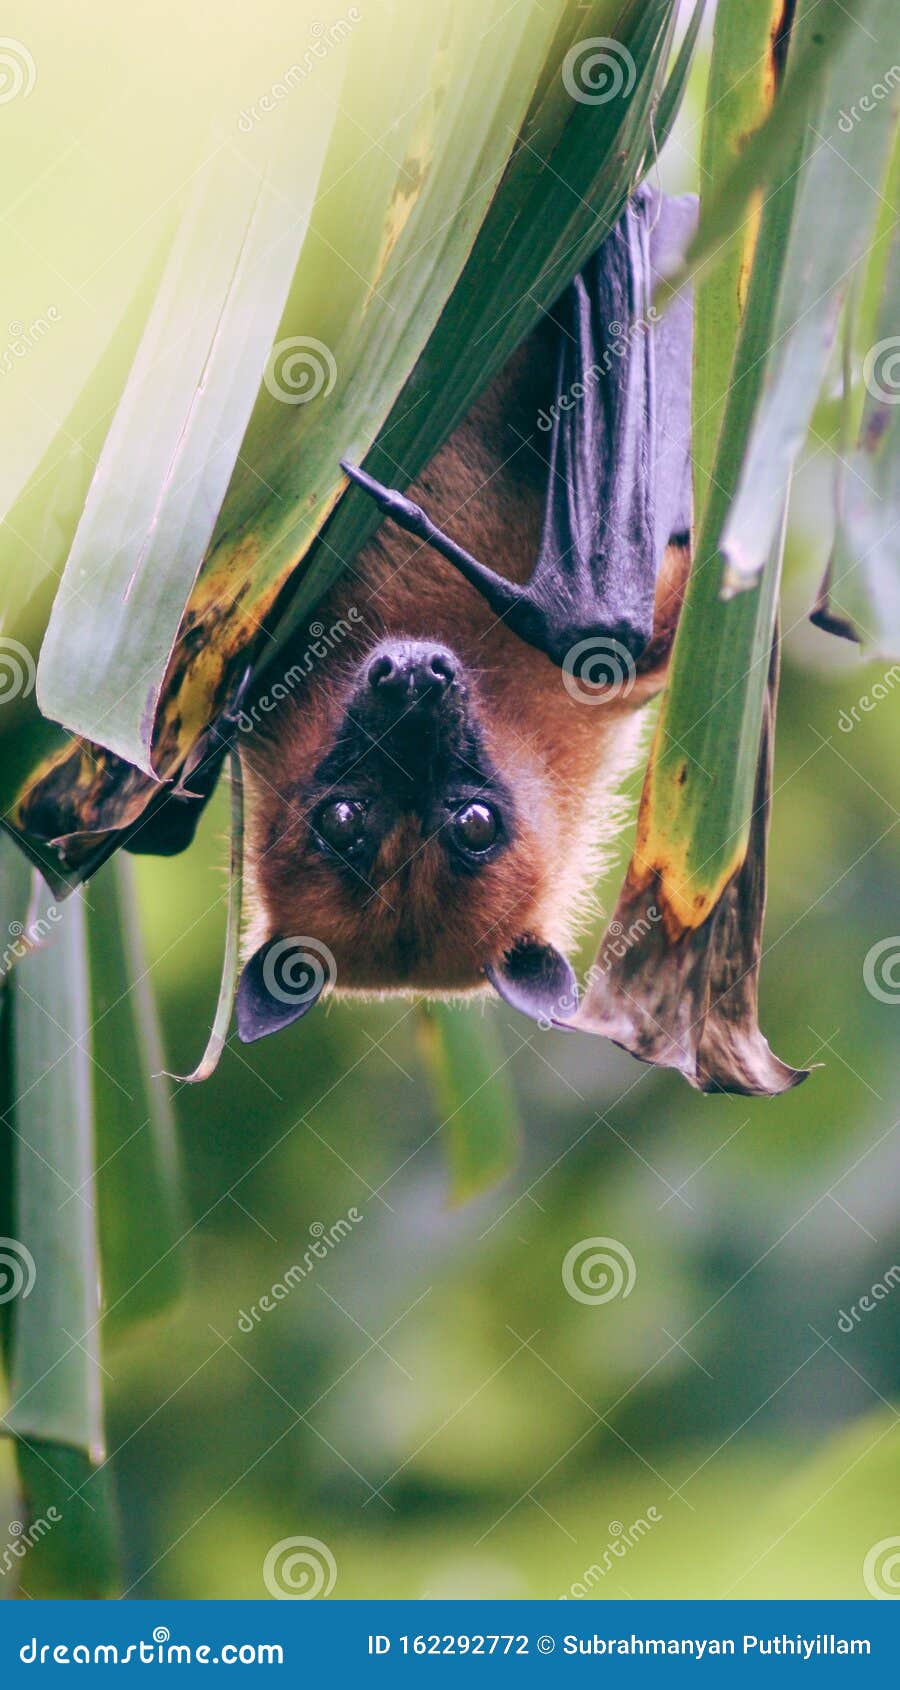 挂在香蕉树叶上的蝙蝠的美妙影像库存照片 图片包括有挂在香蕉树叶上的蝙蝠的美妙影像